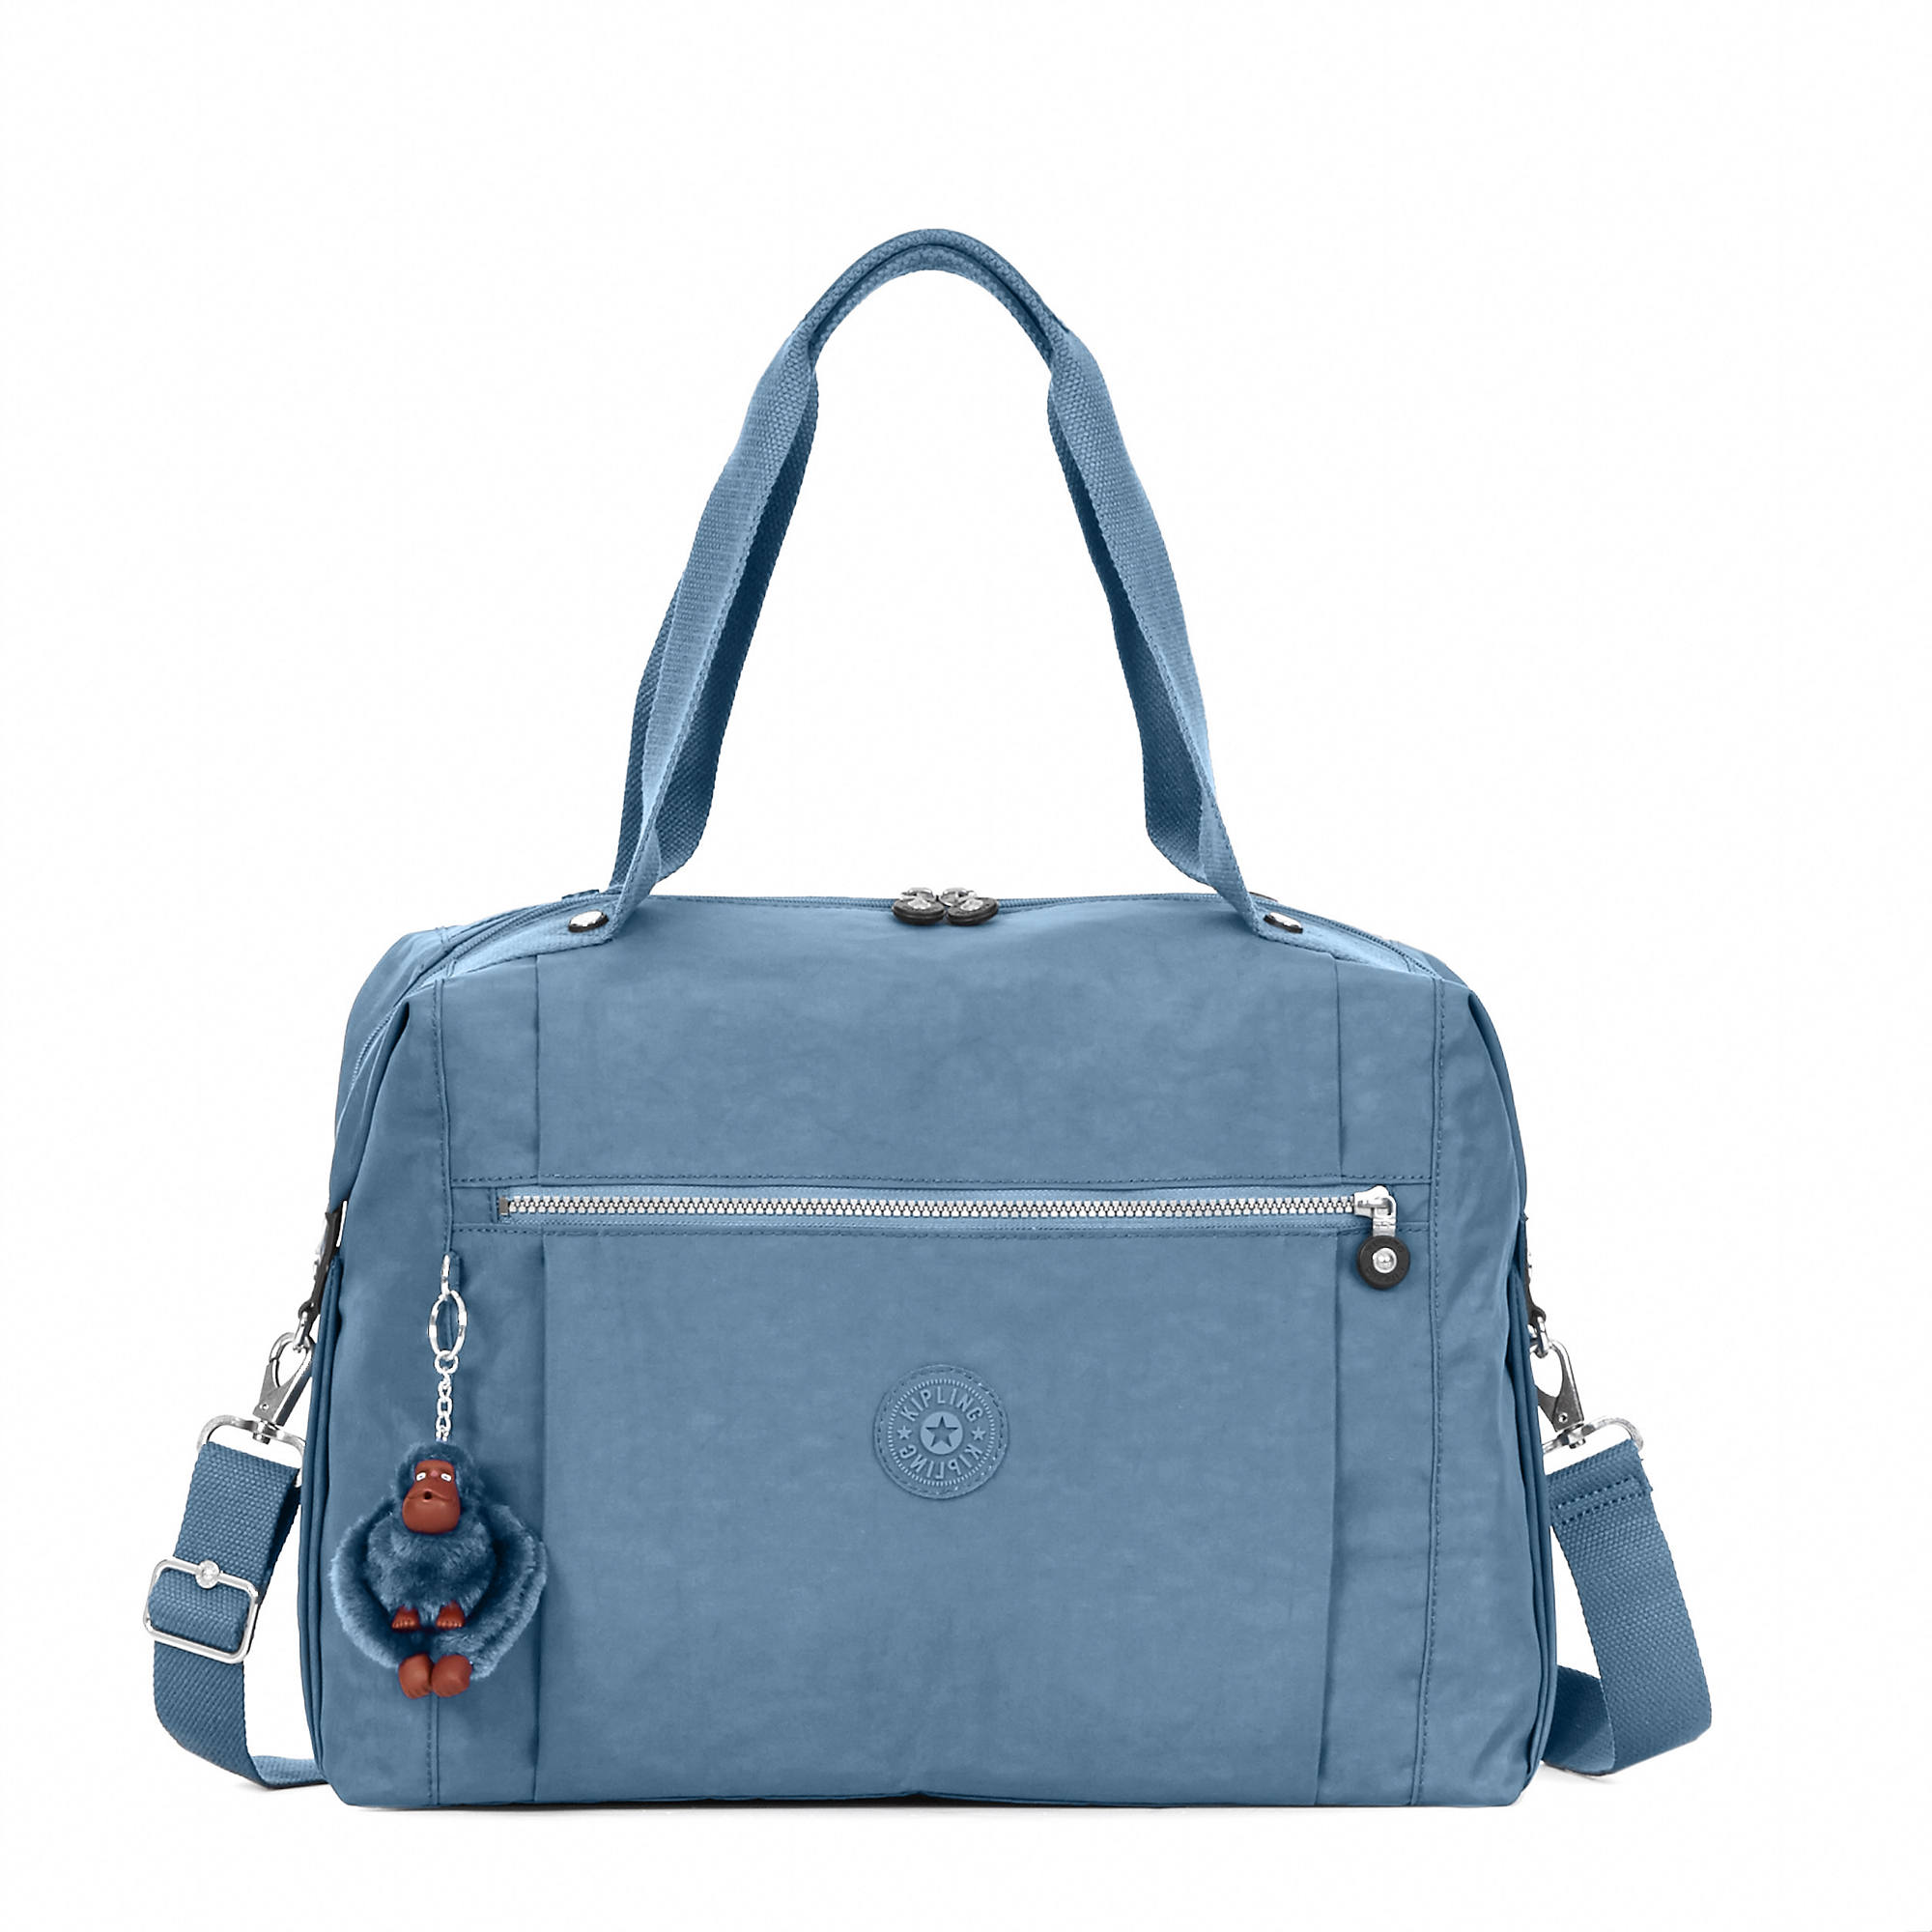 Kipling Ferra Weekender Duffel Bag | eBay